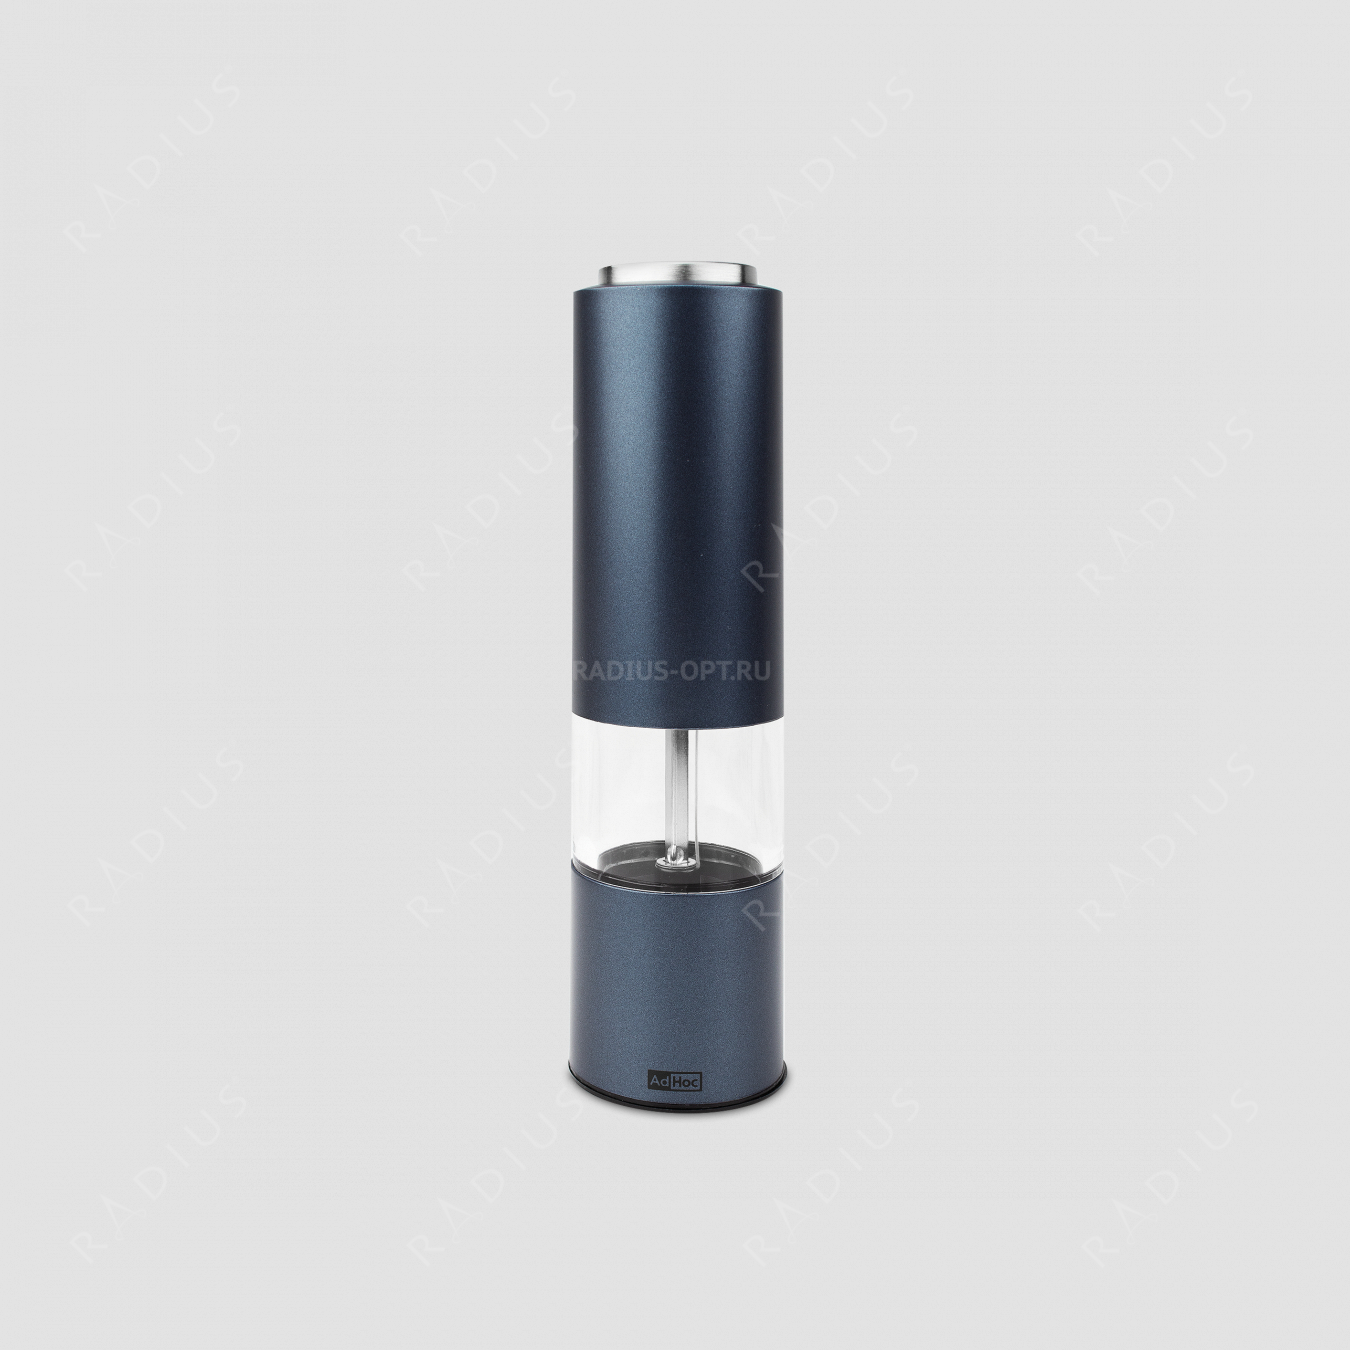 Мельница электрическая  для перца и соли, eMill.3, размер: 21,5 x 5 см, цвет - синий, серия eMill, ADHOC, Германия